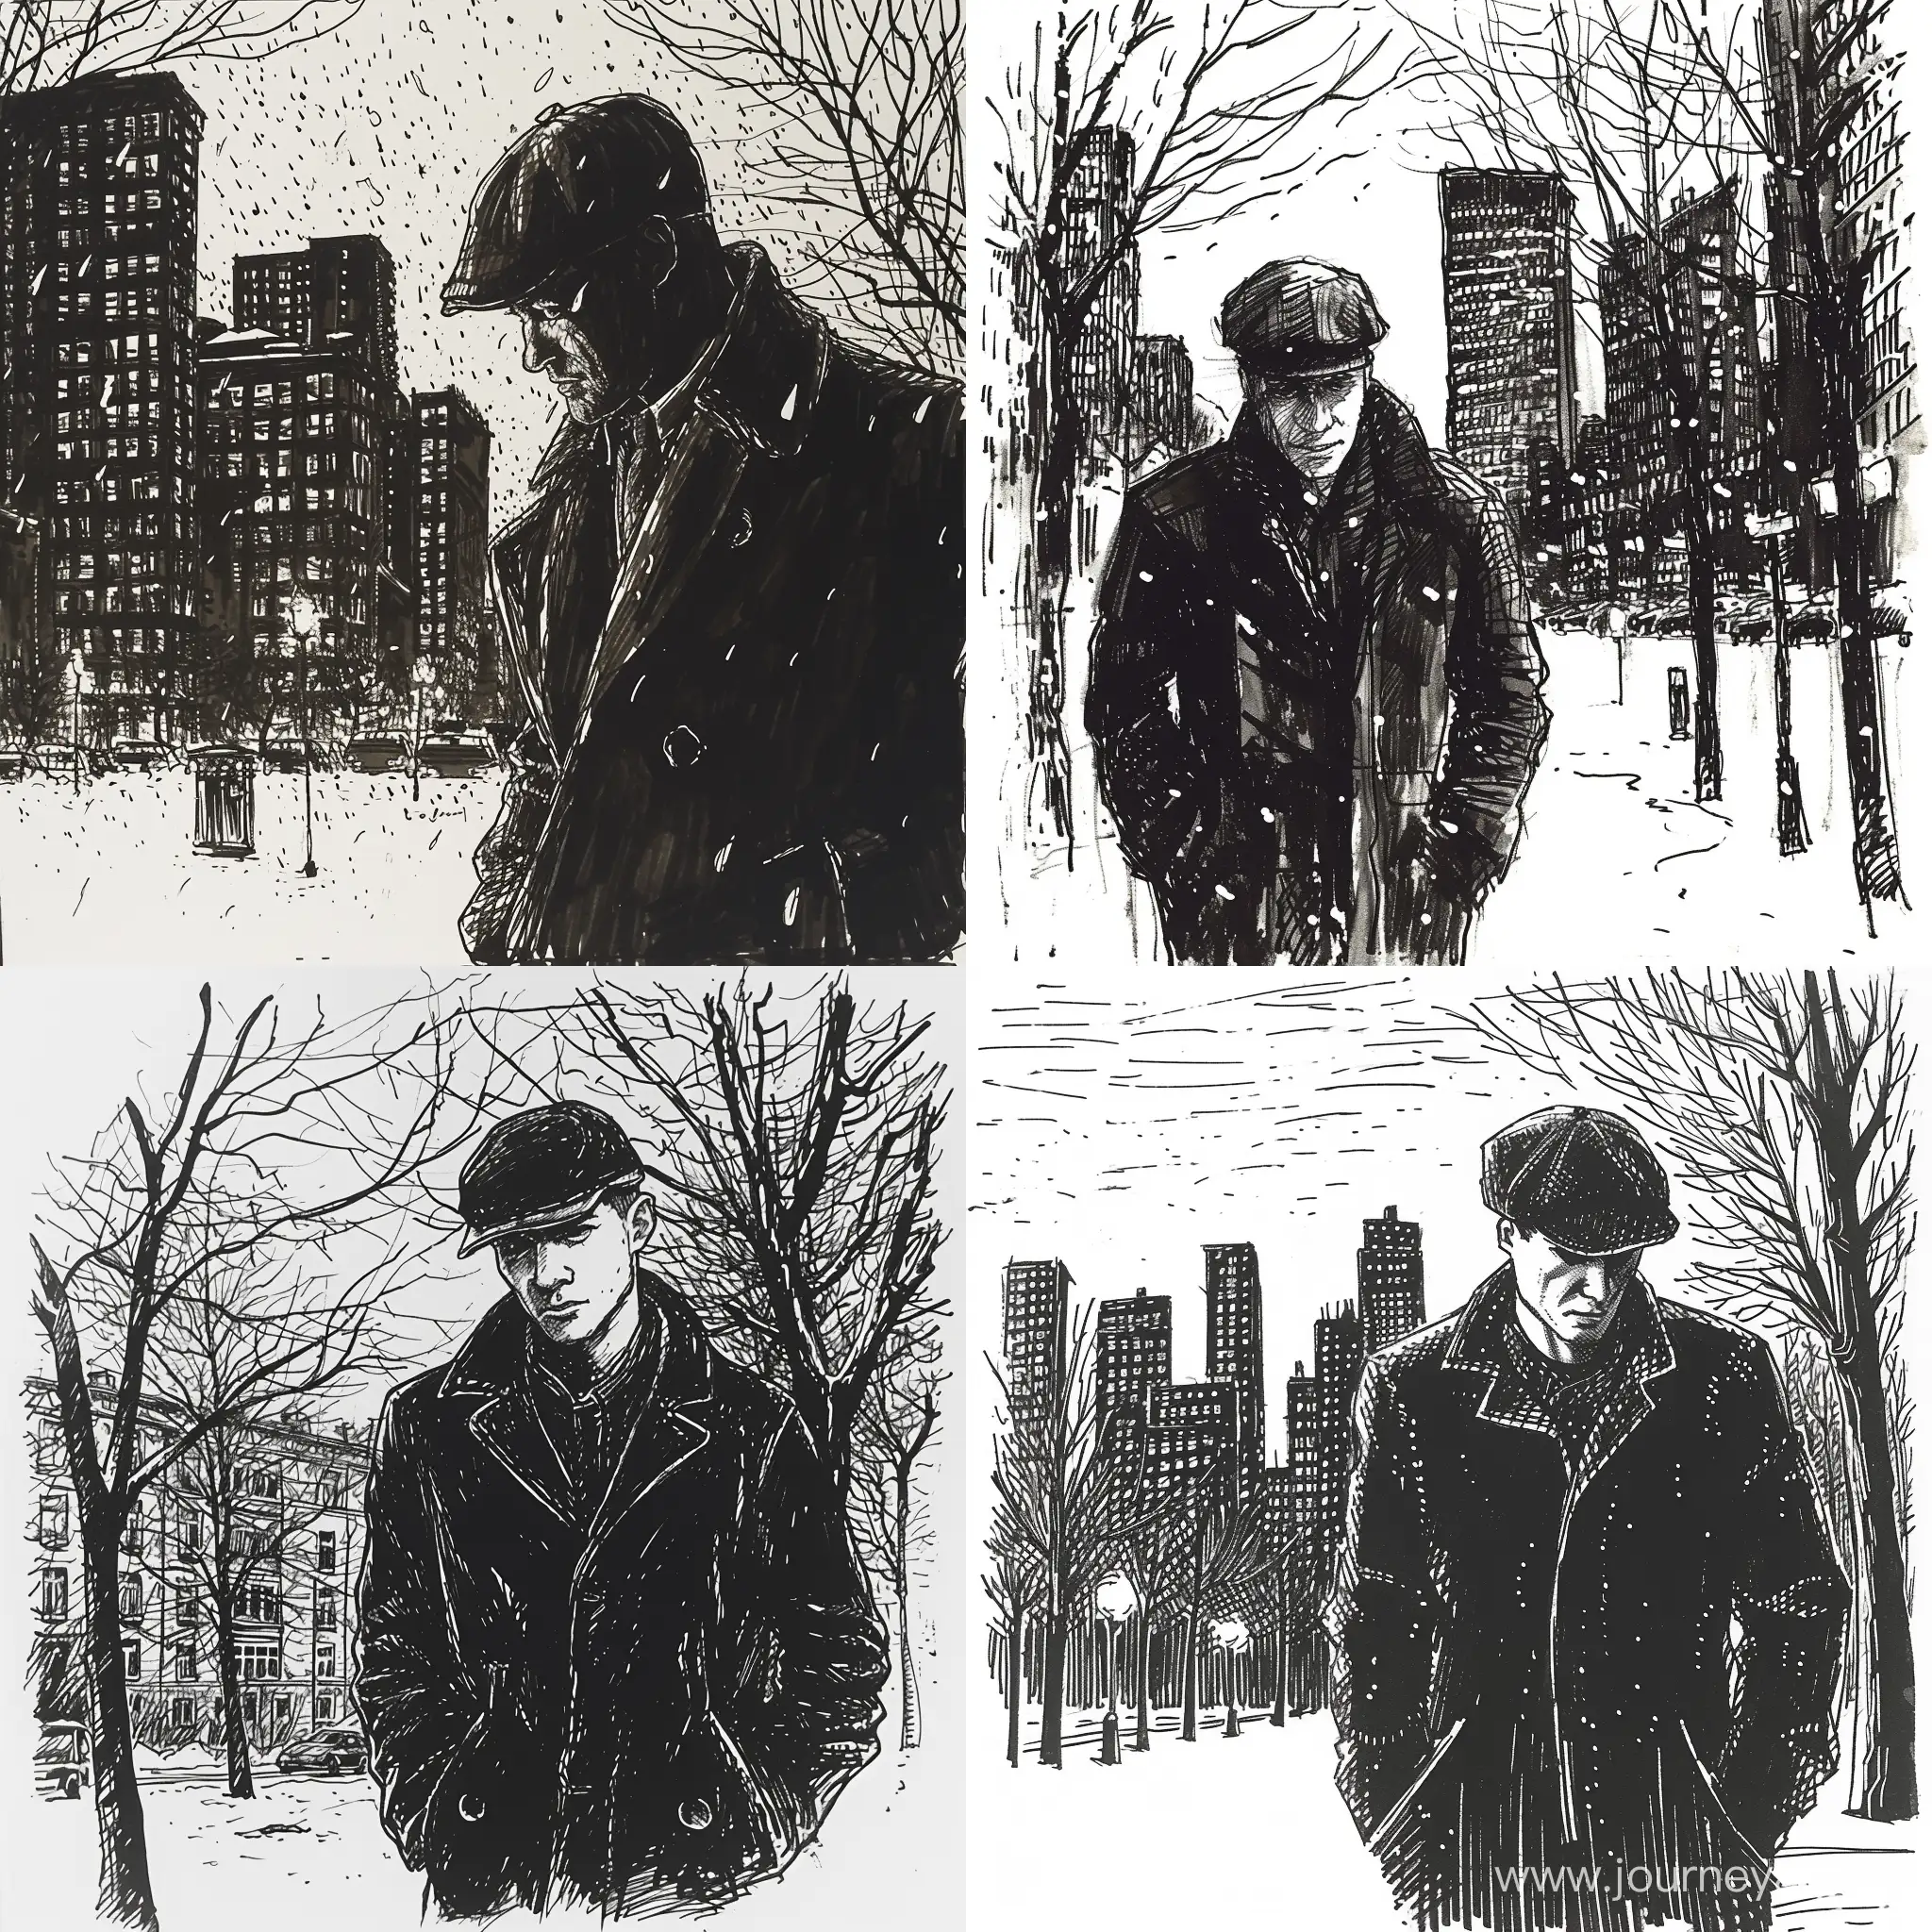 Зима, мужчина в кепке идет по вечернему городу, руки в карманах, рисунок чёрной тушью